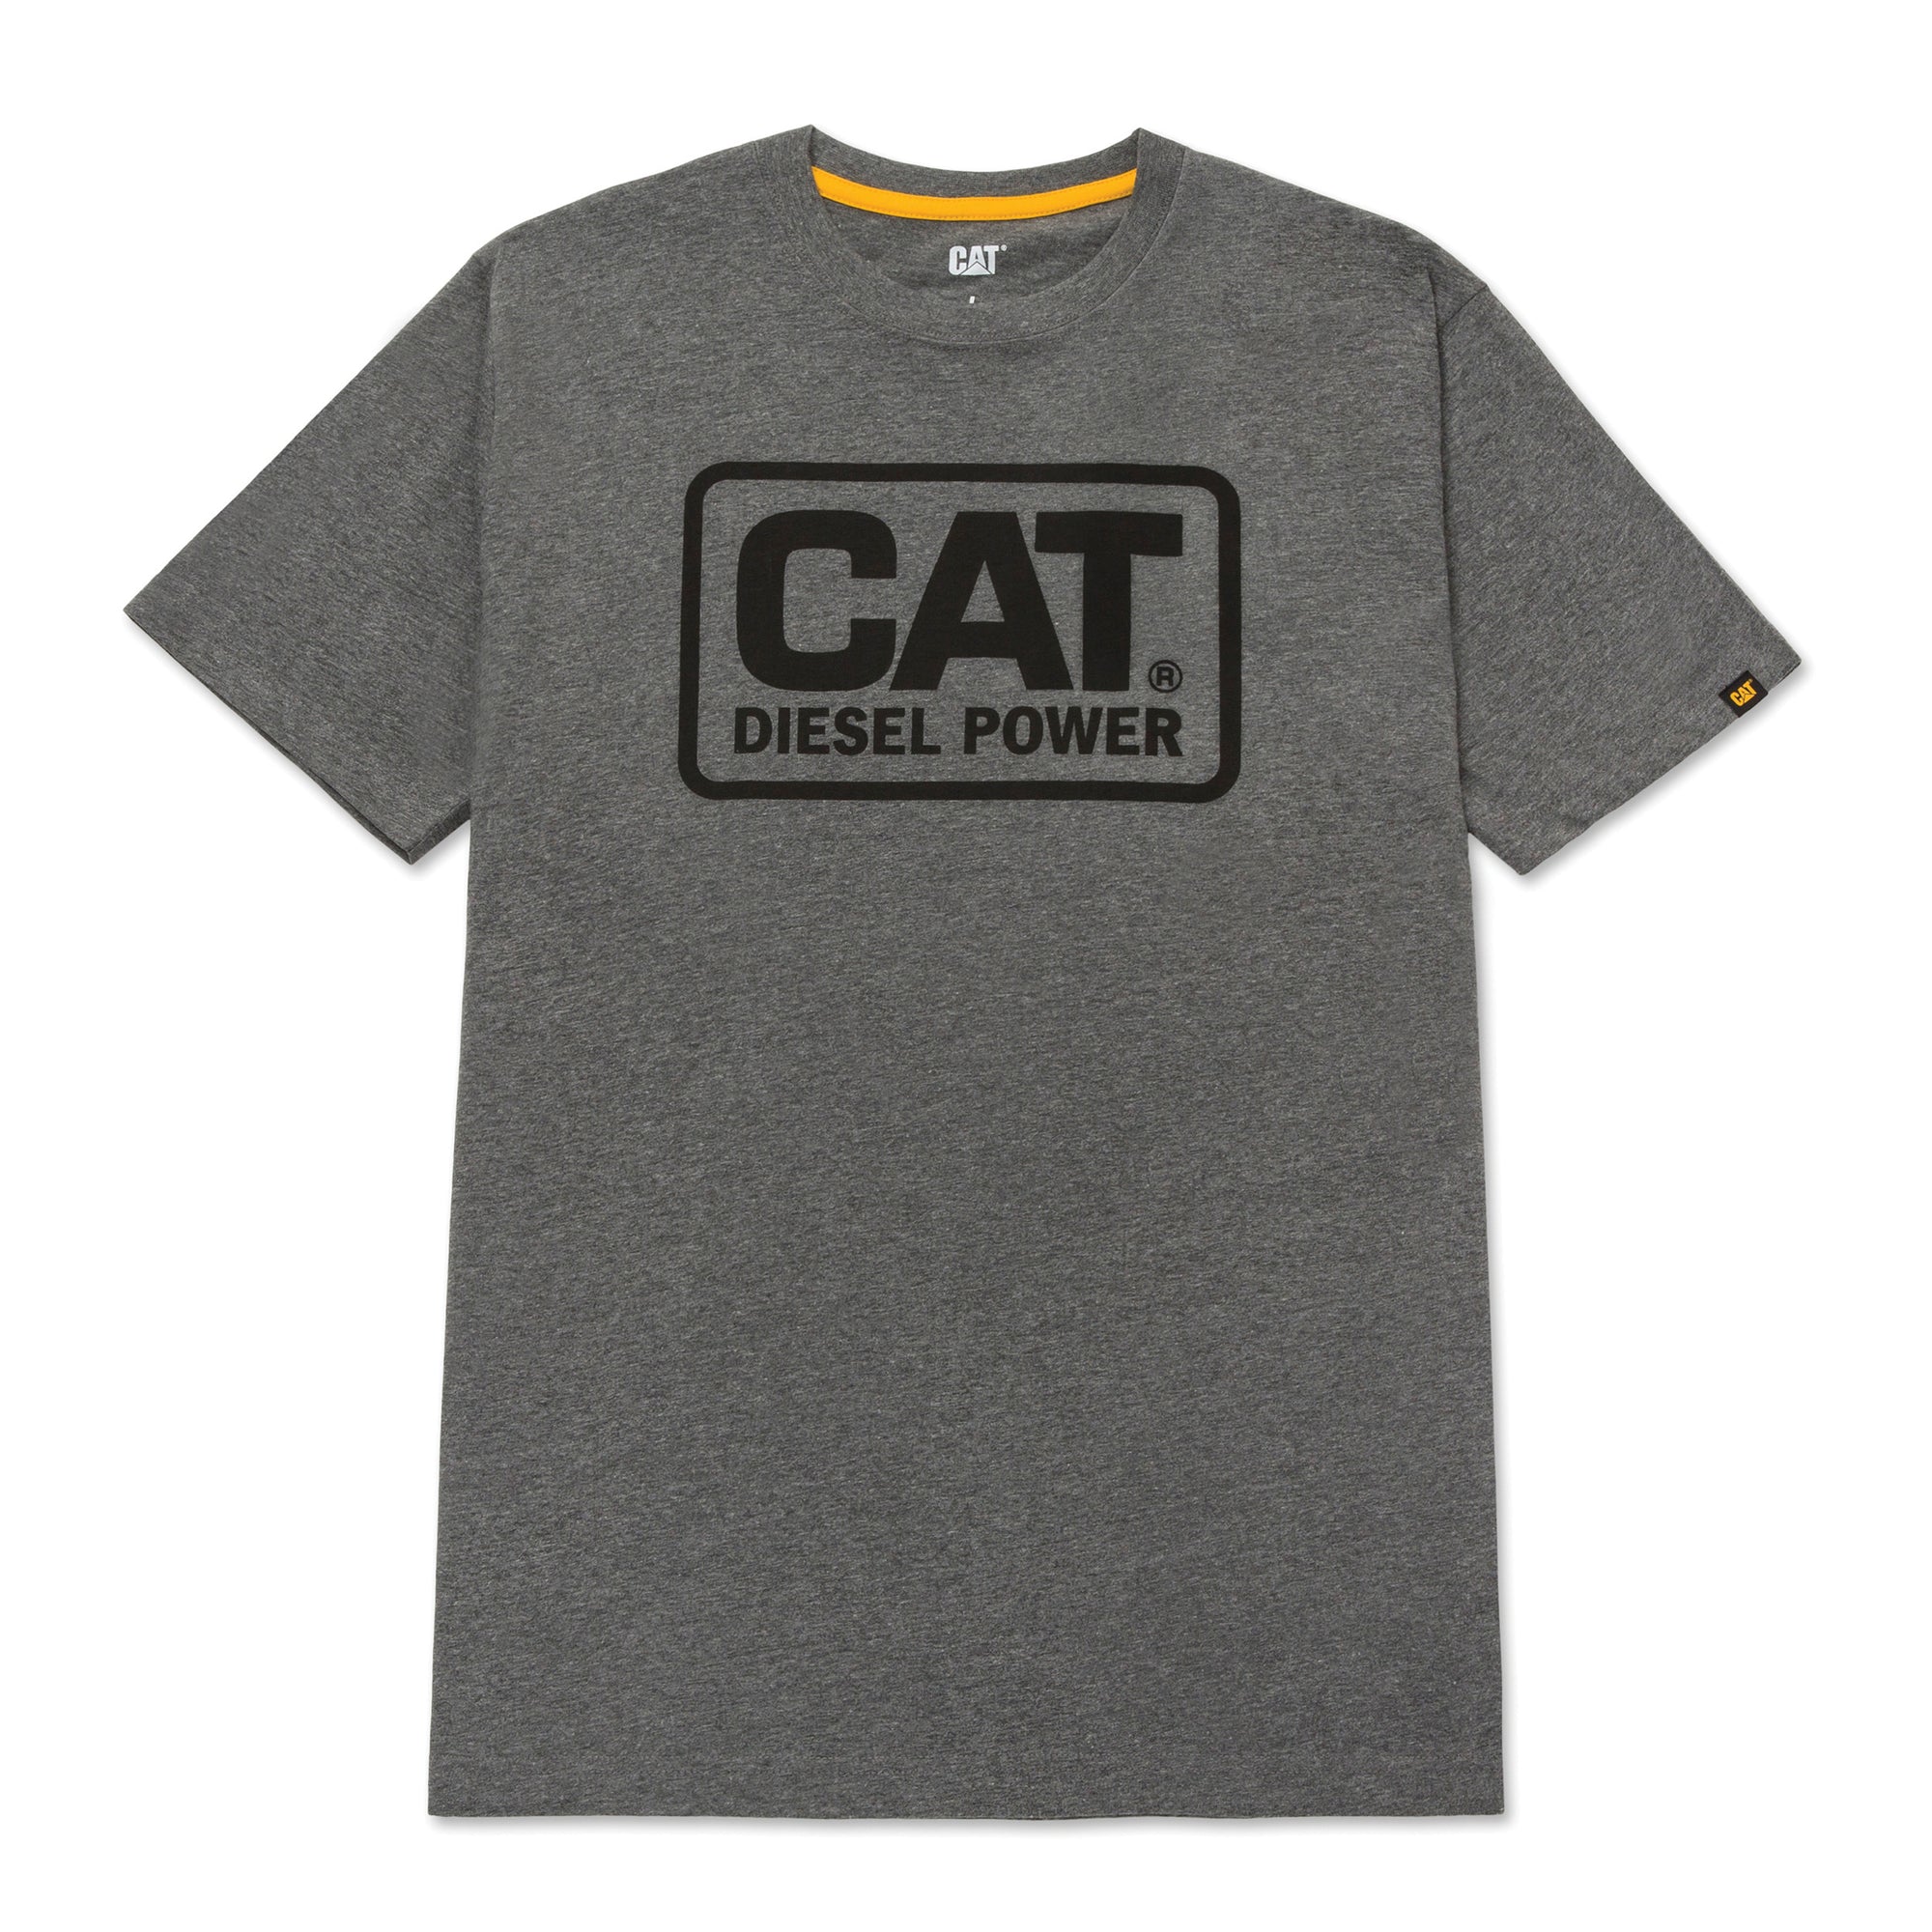 CAT Men's Diesel Power T-Shirt - Work World - Workwear, Work Boots, Safety Gear